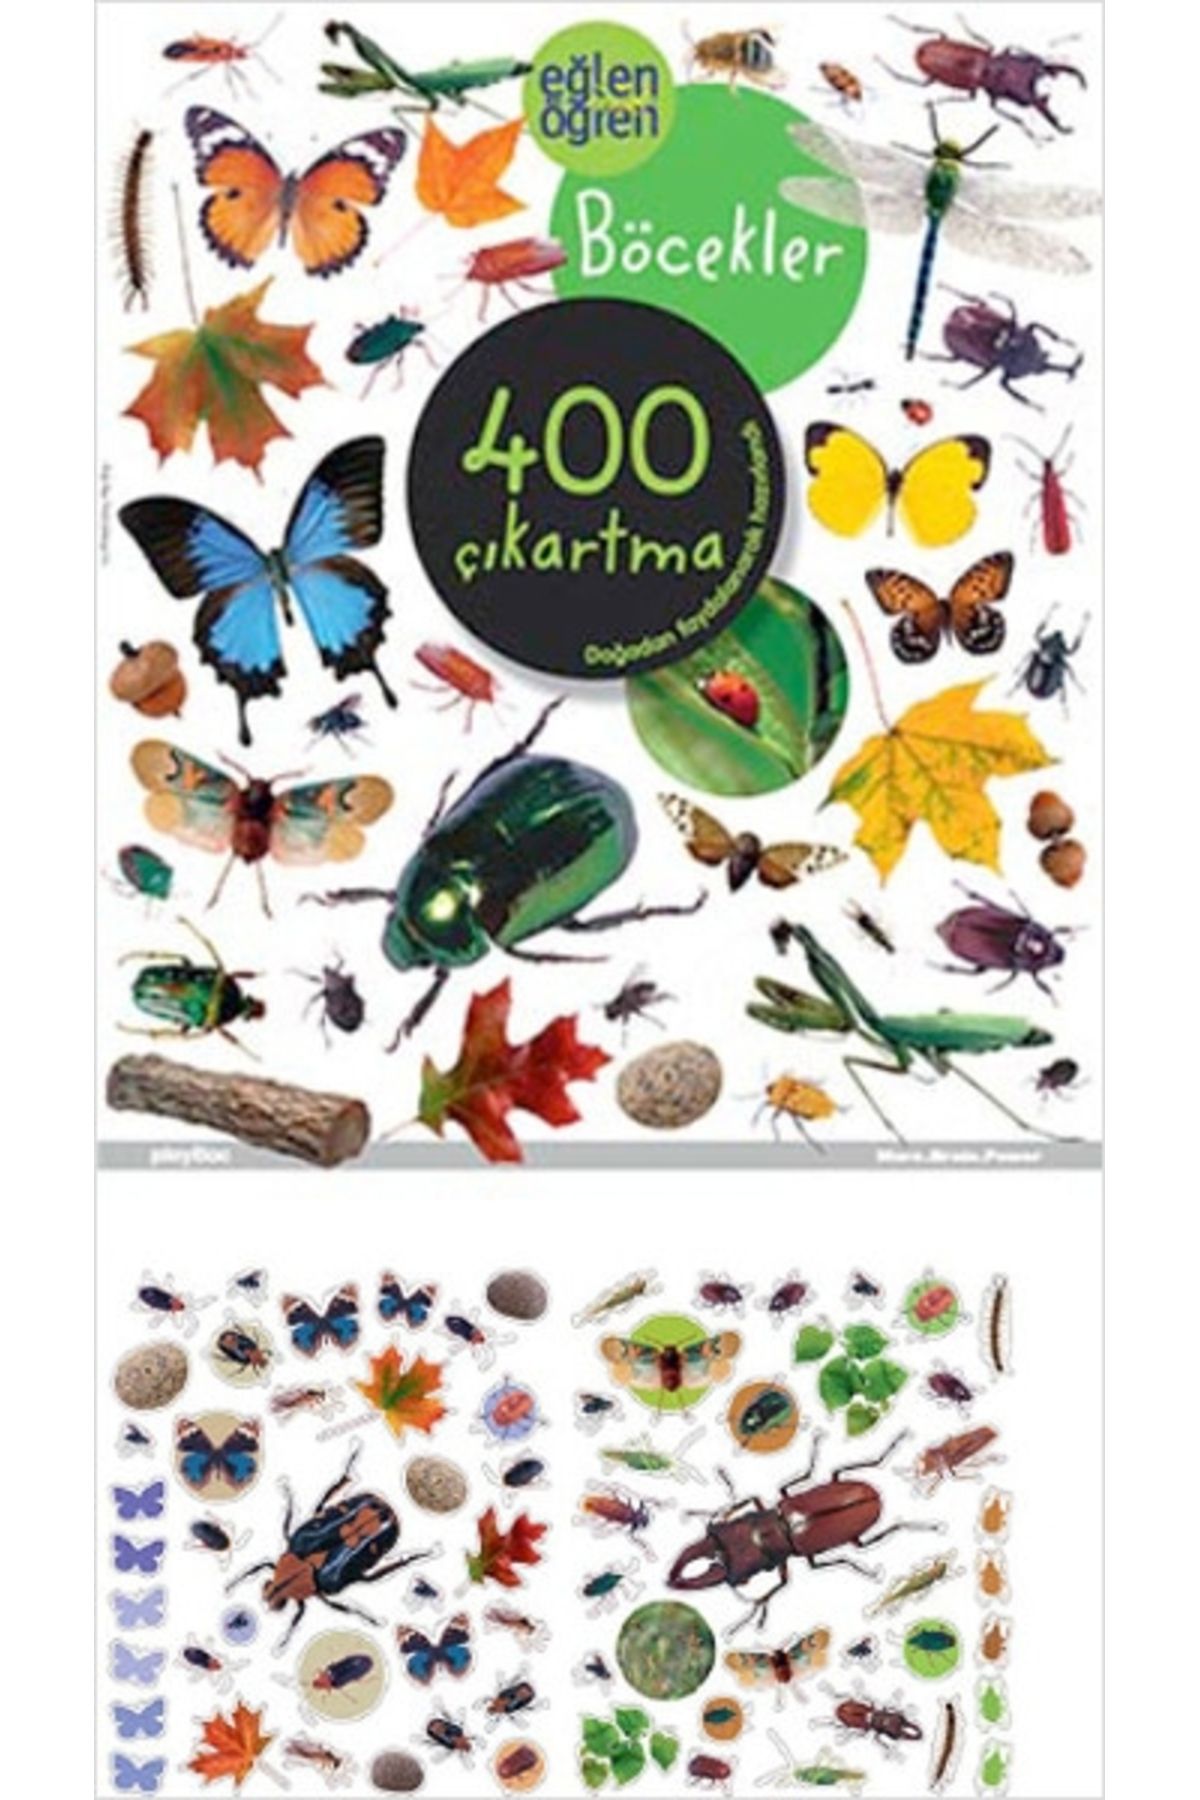 Genel Markalar Eğlen Öğren - Böcekler 400 Çıkartma